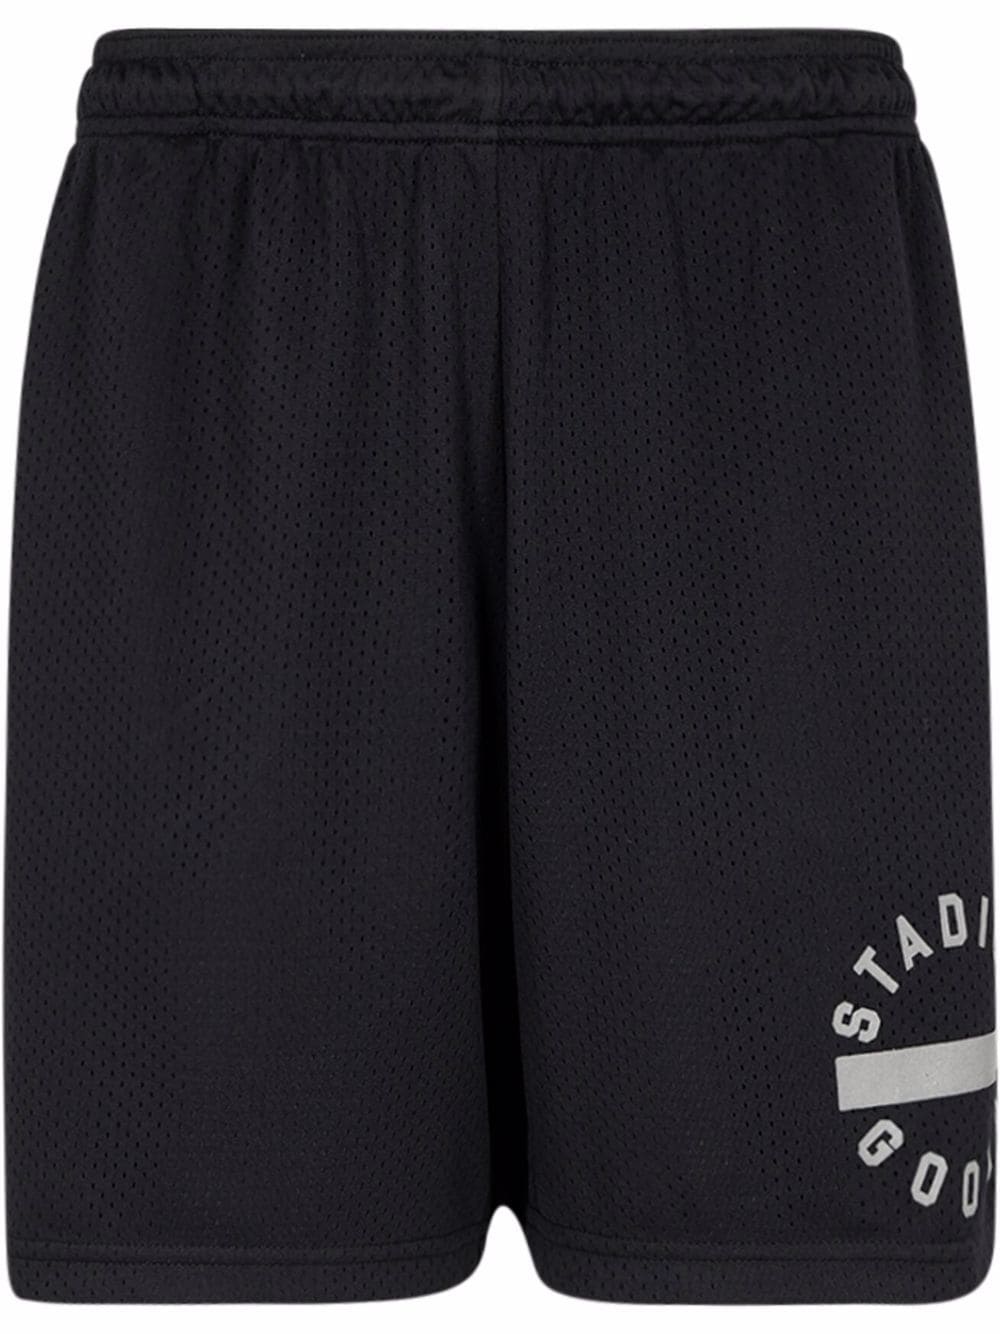 STADIUM GOODS® Black/Reflective mesh gym shorts von STADIUM GOODS®